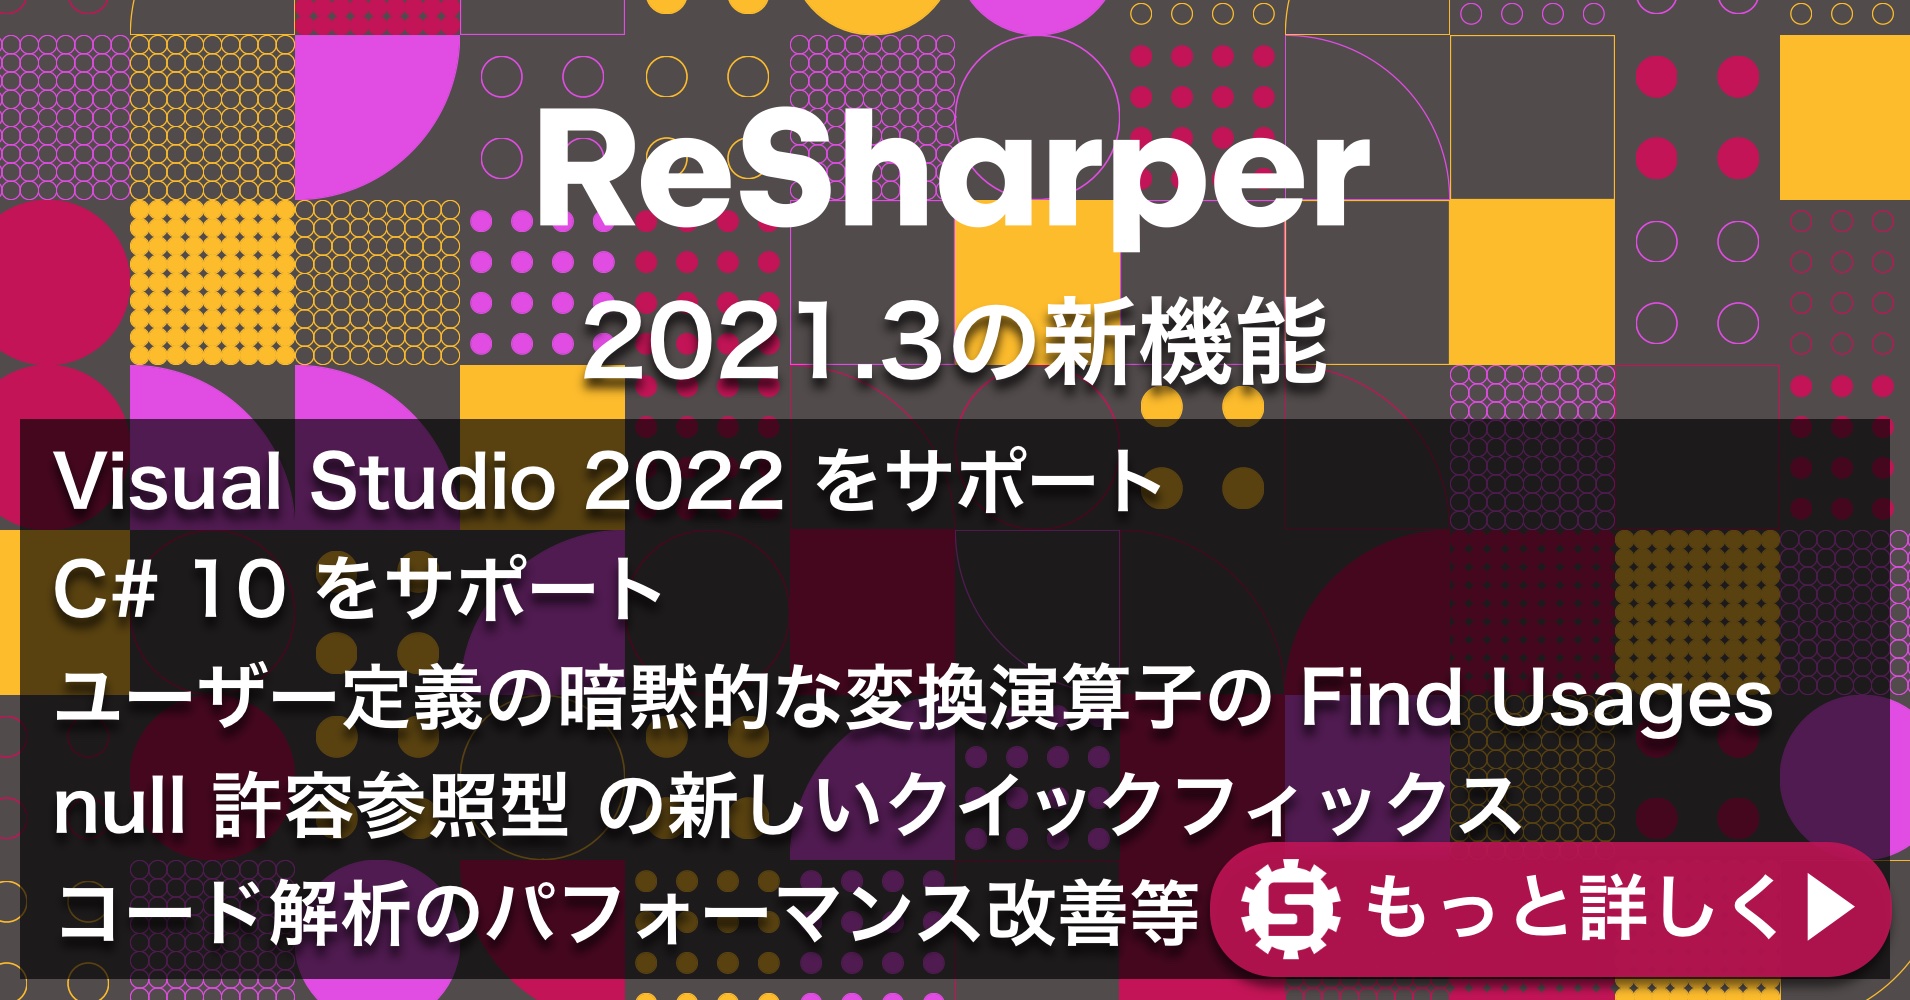 ReSharper 2021.3の新機能